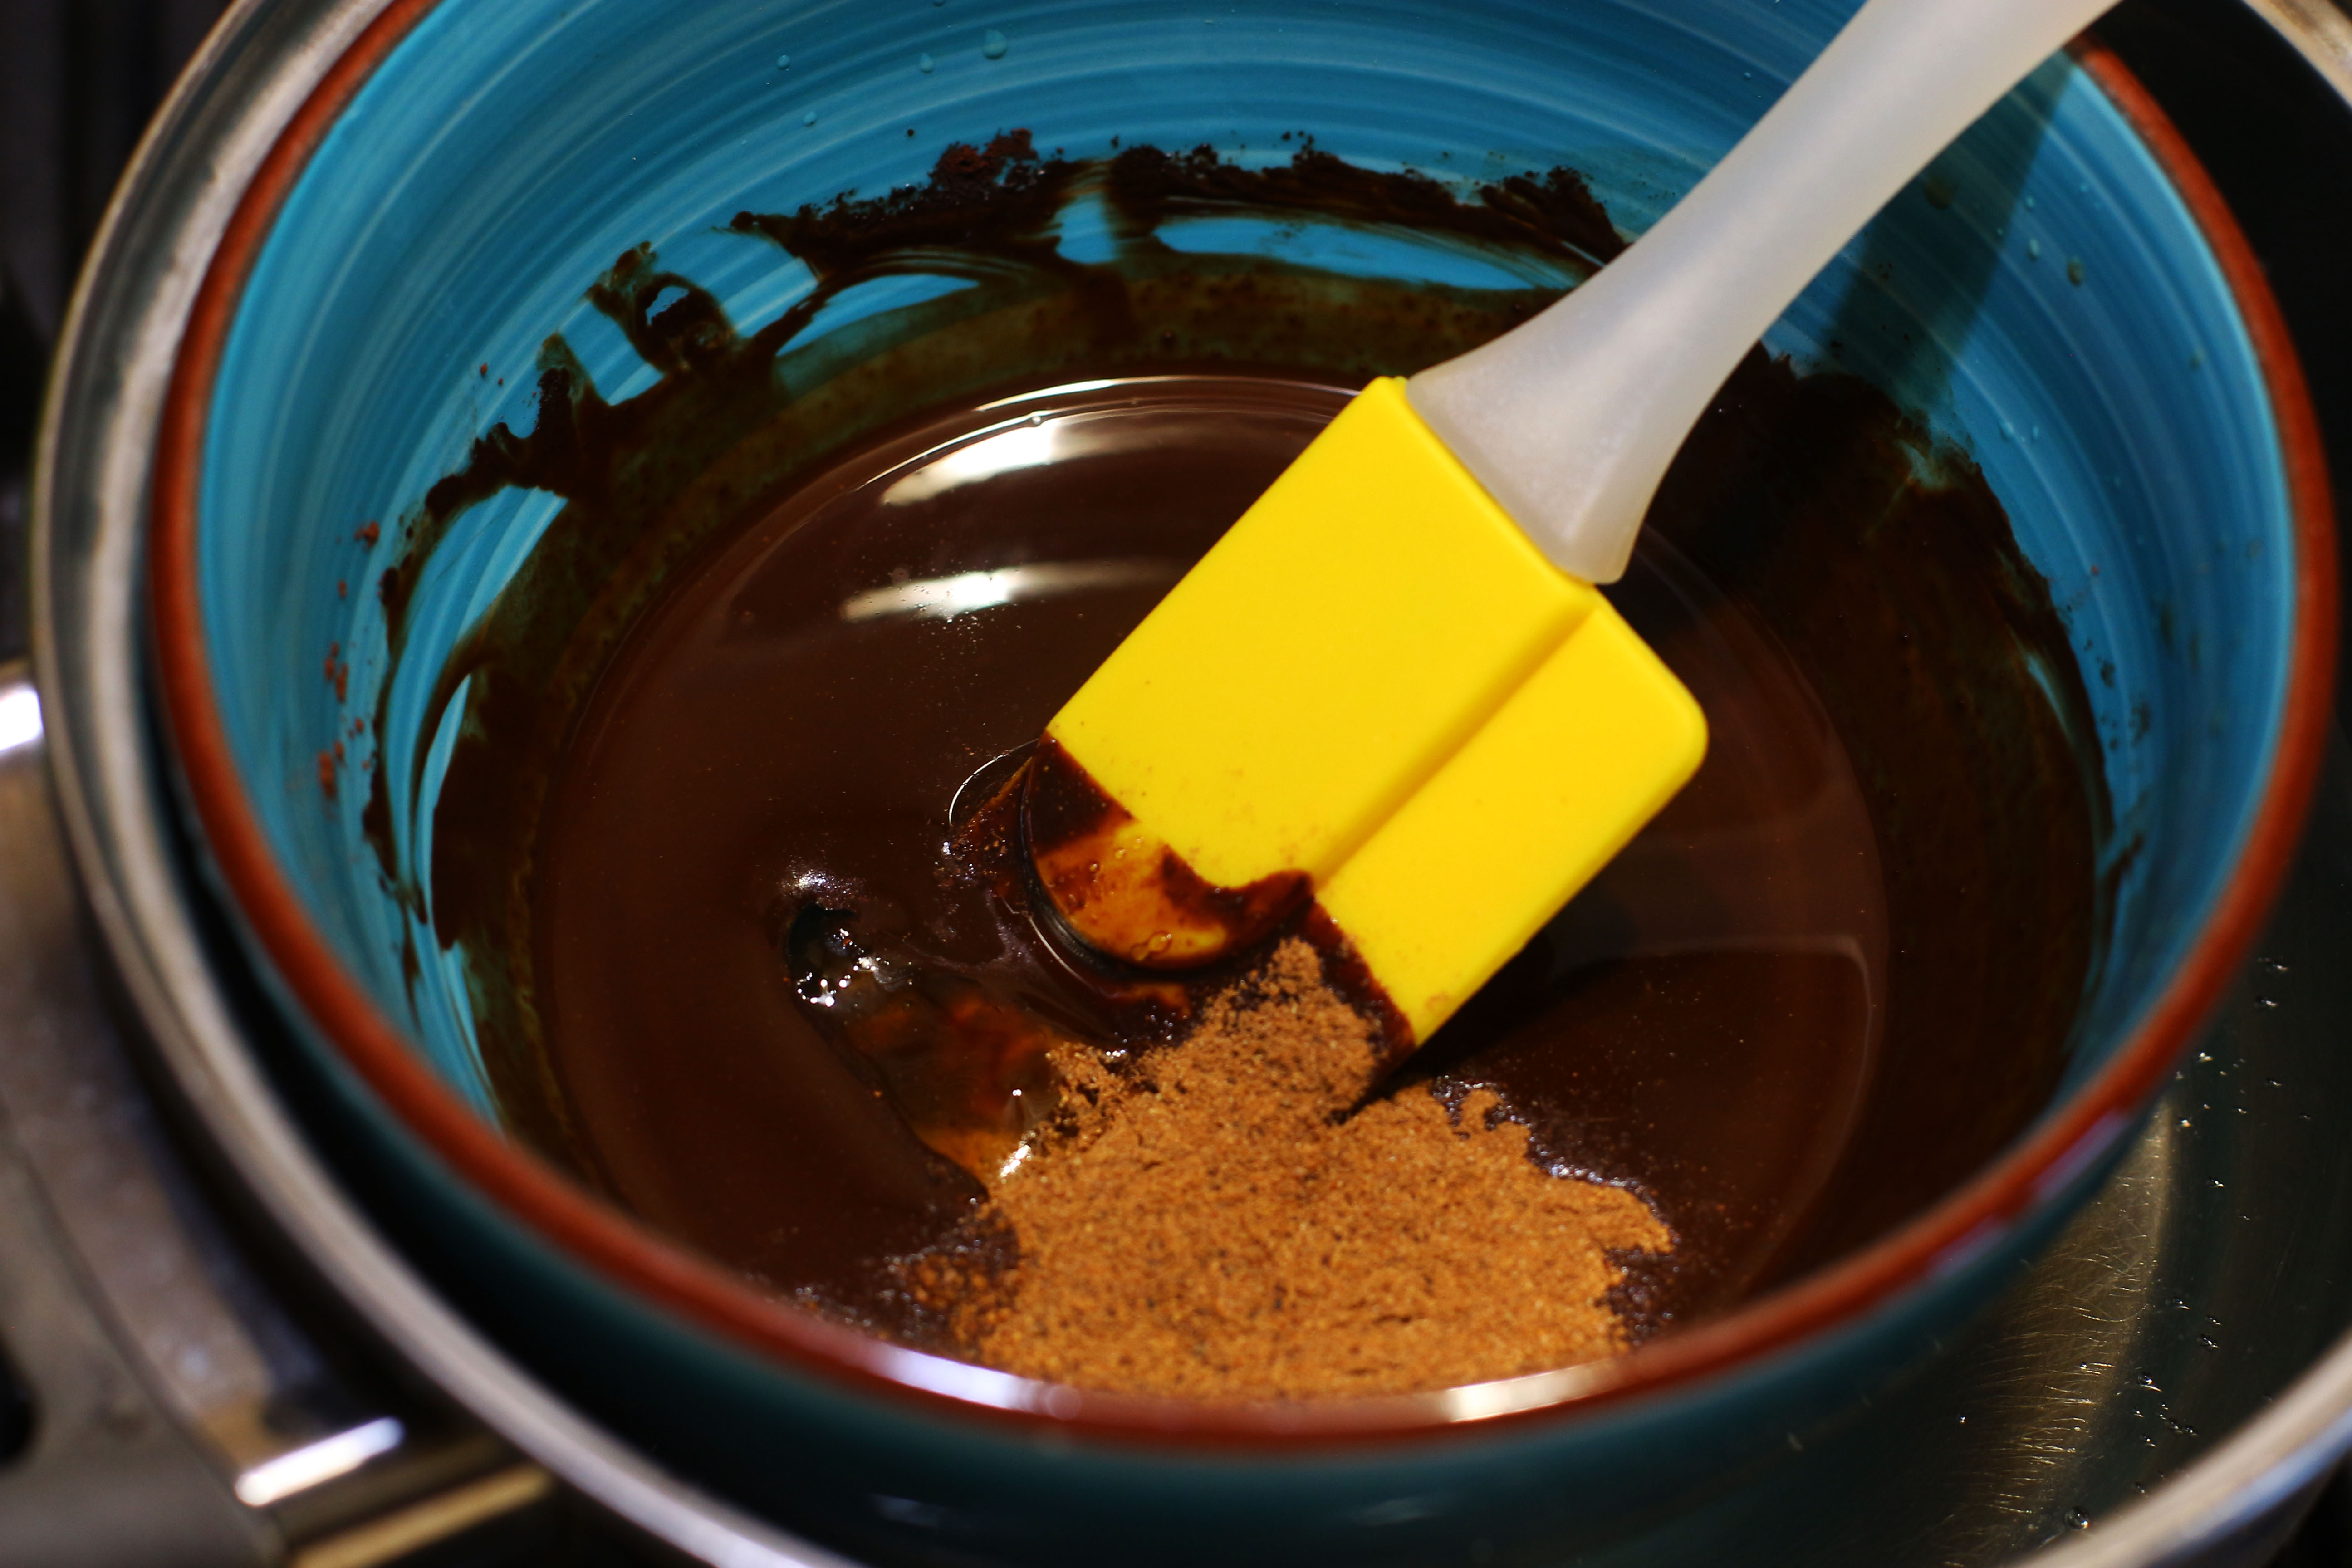 Рецепт домашнего шоколада с маслом